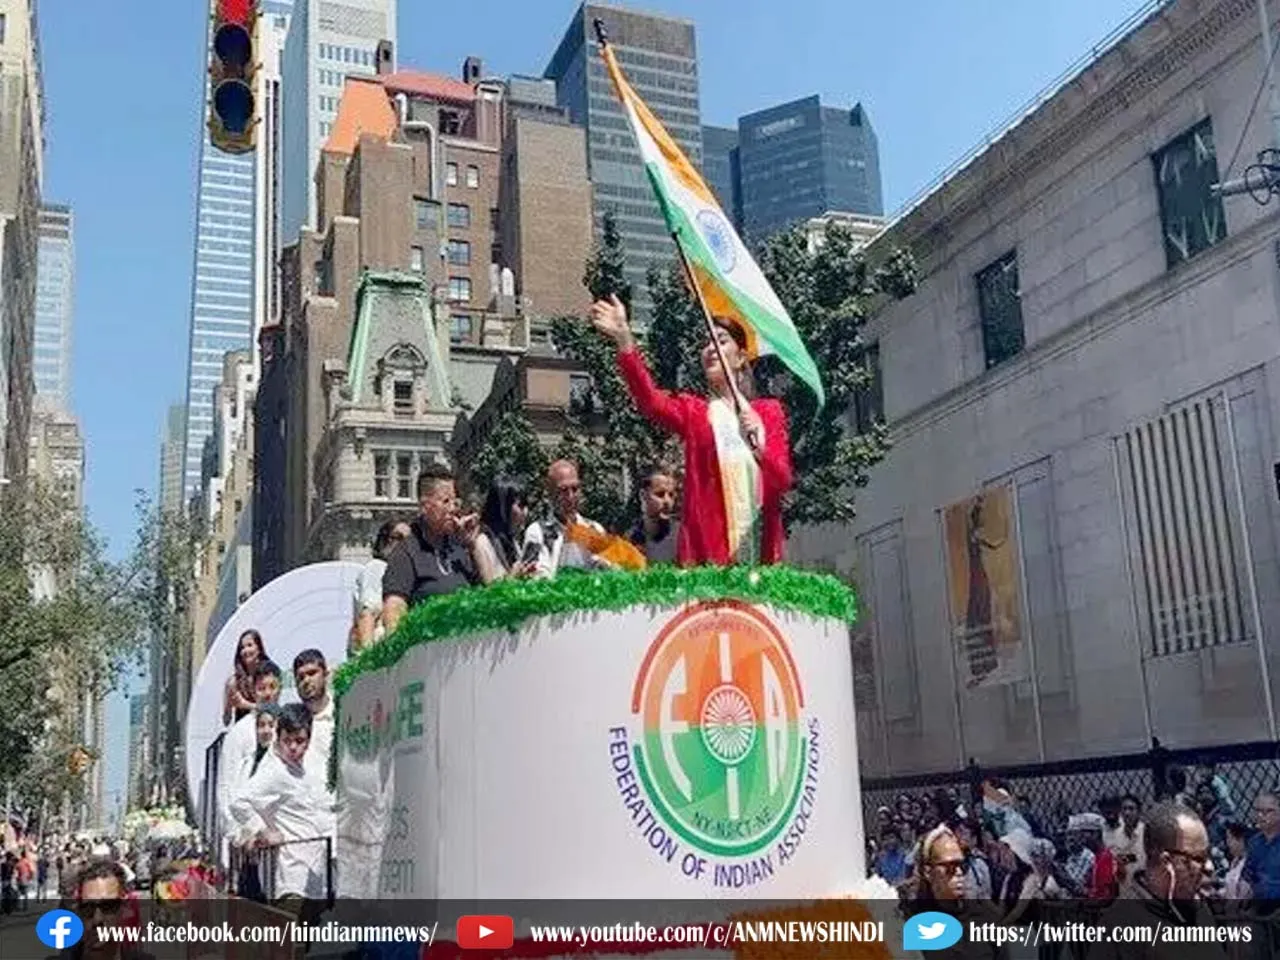 India Day Parade : विदेश में लहराया भारतीय तिरंगा, देश के बाहर दुनिया की सबसे बड़ी 'इंडिया डे परेड'